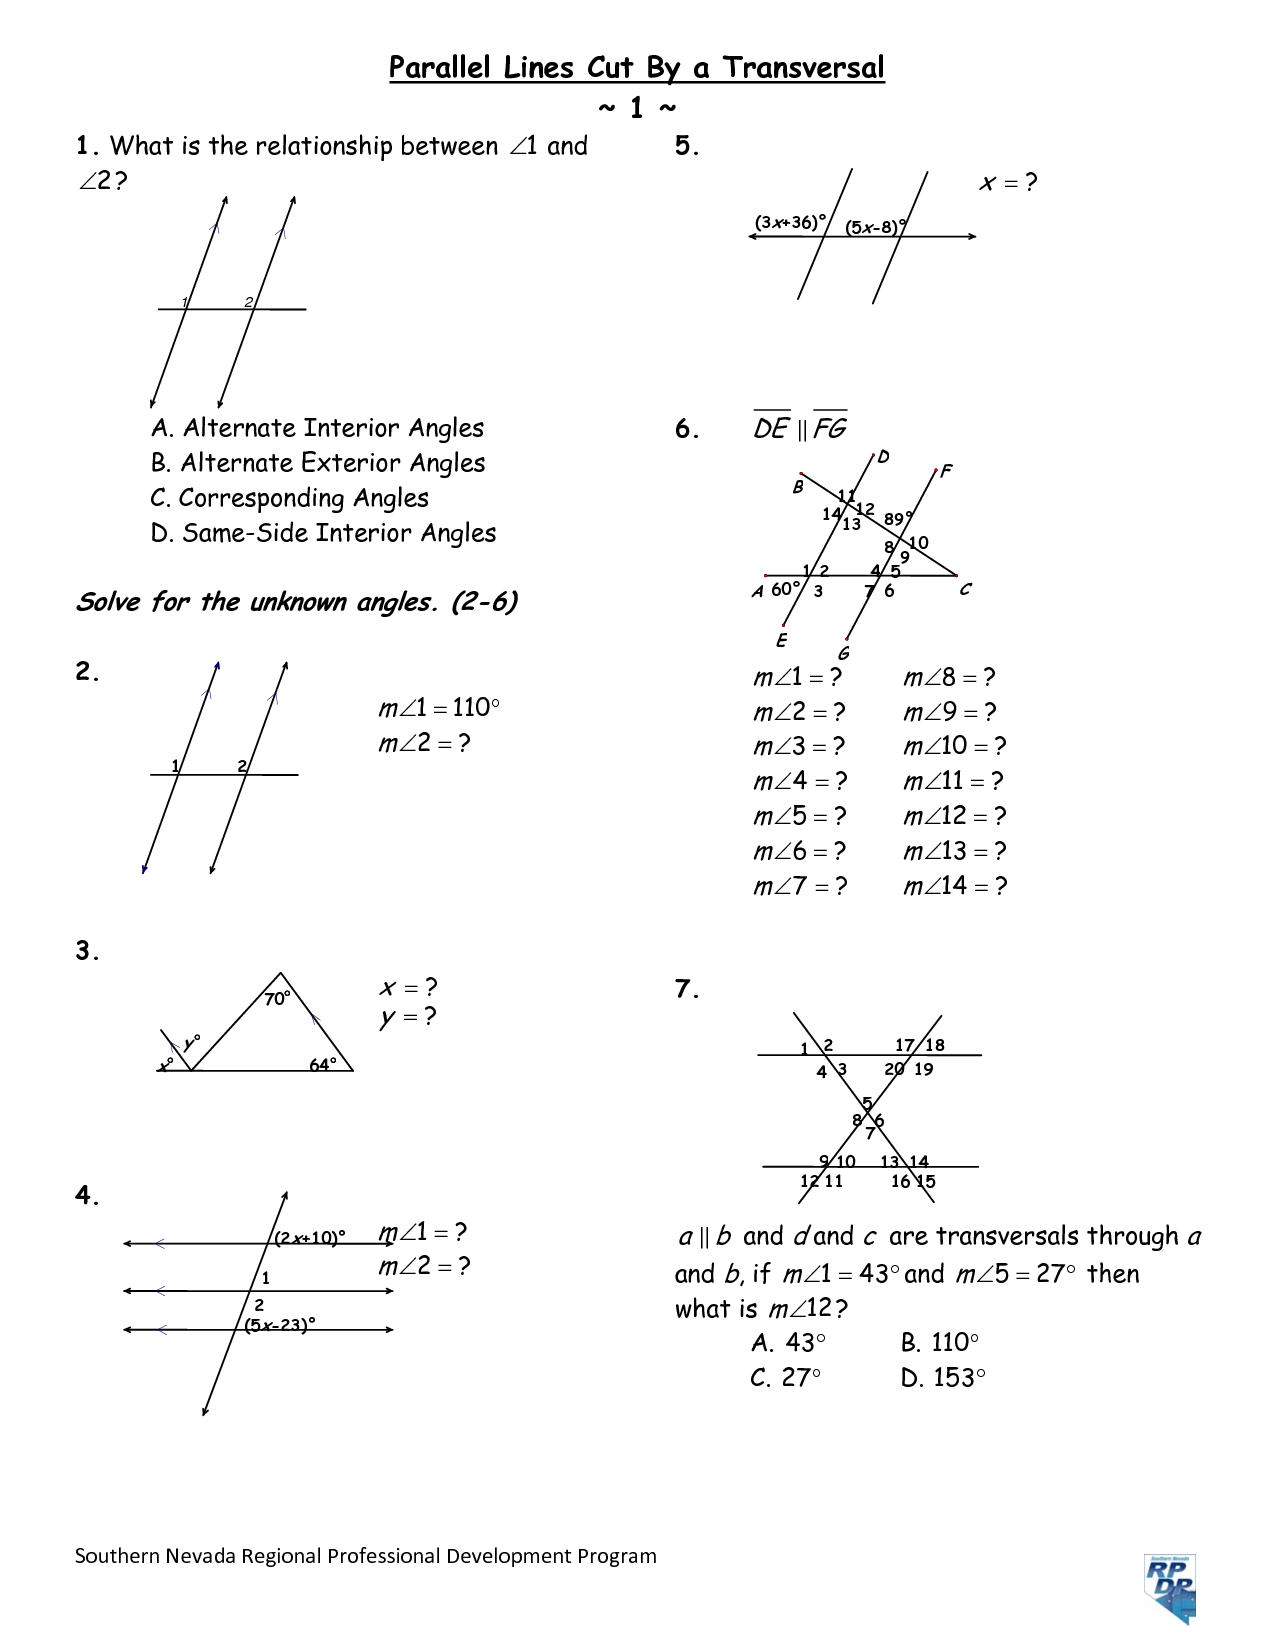 parallel-line-cut-by-transversal-worksheet